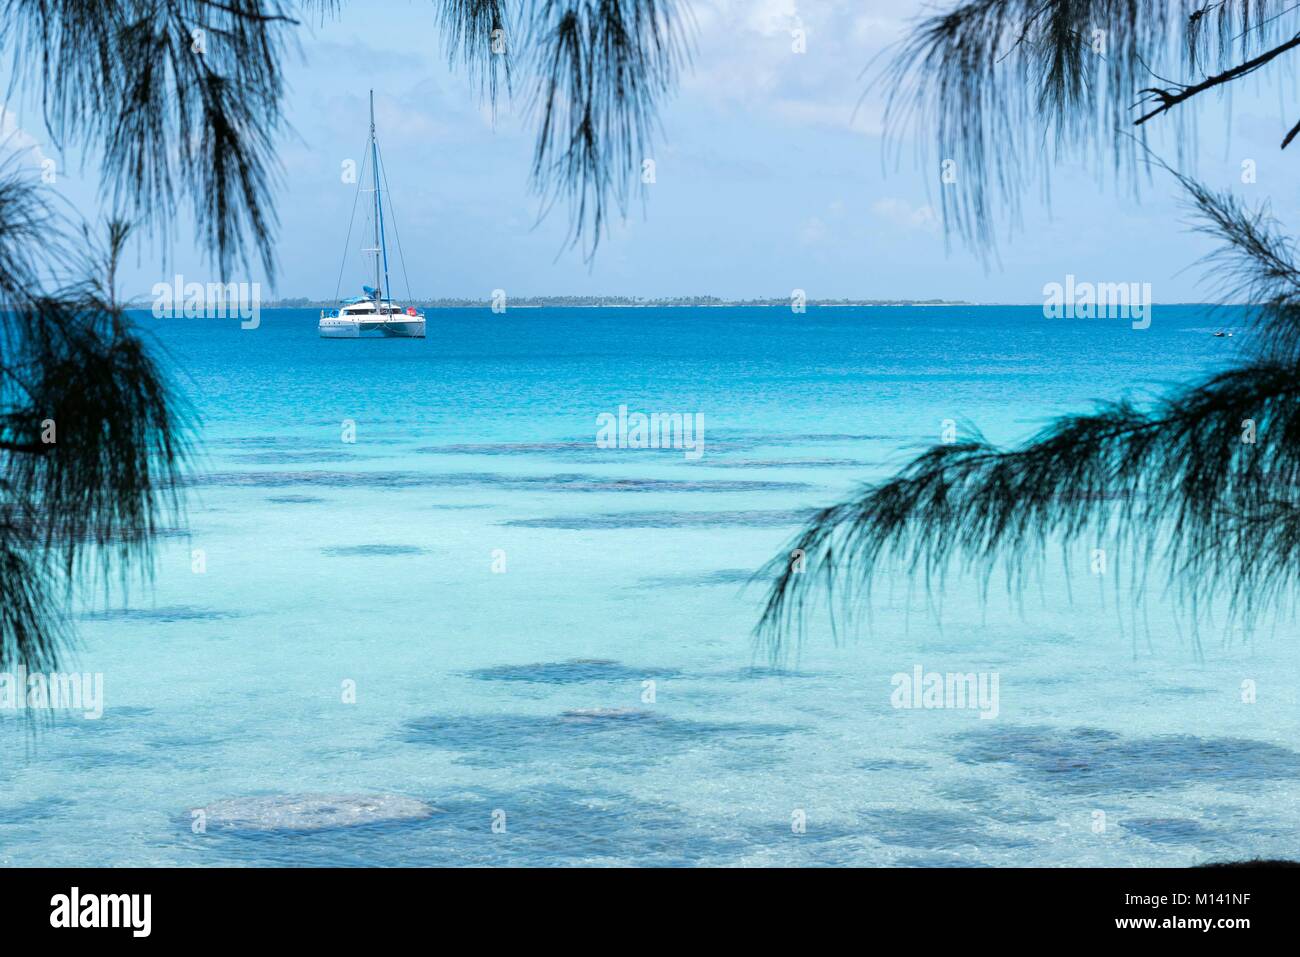 Francia, Polinesia francese, Arcipelago Tuamotu, Fakarava Atoll, Rotoava, Riserva della Biosfera dall'UNESCO, catamarano ancorata nella laguna Foto Stock